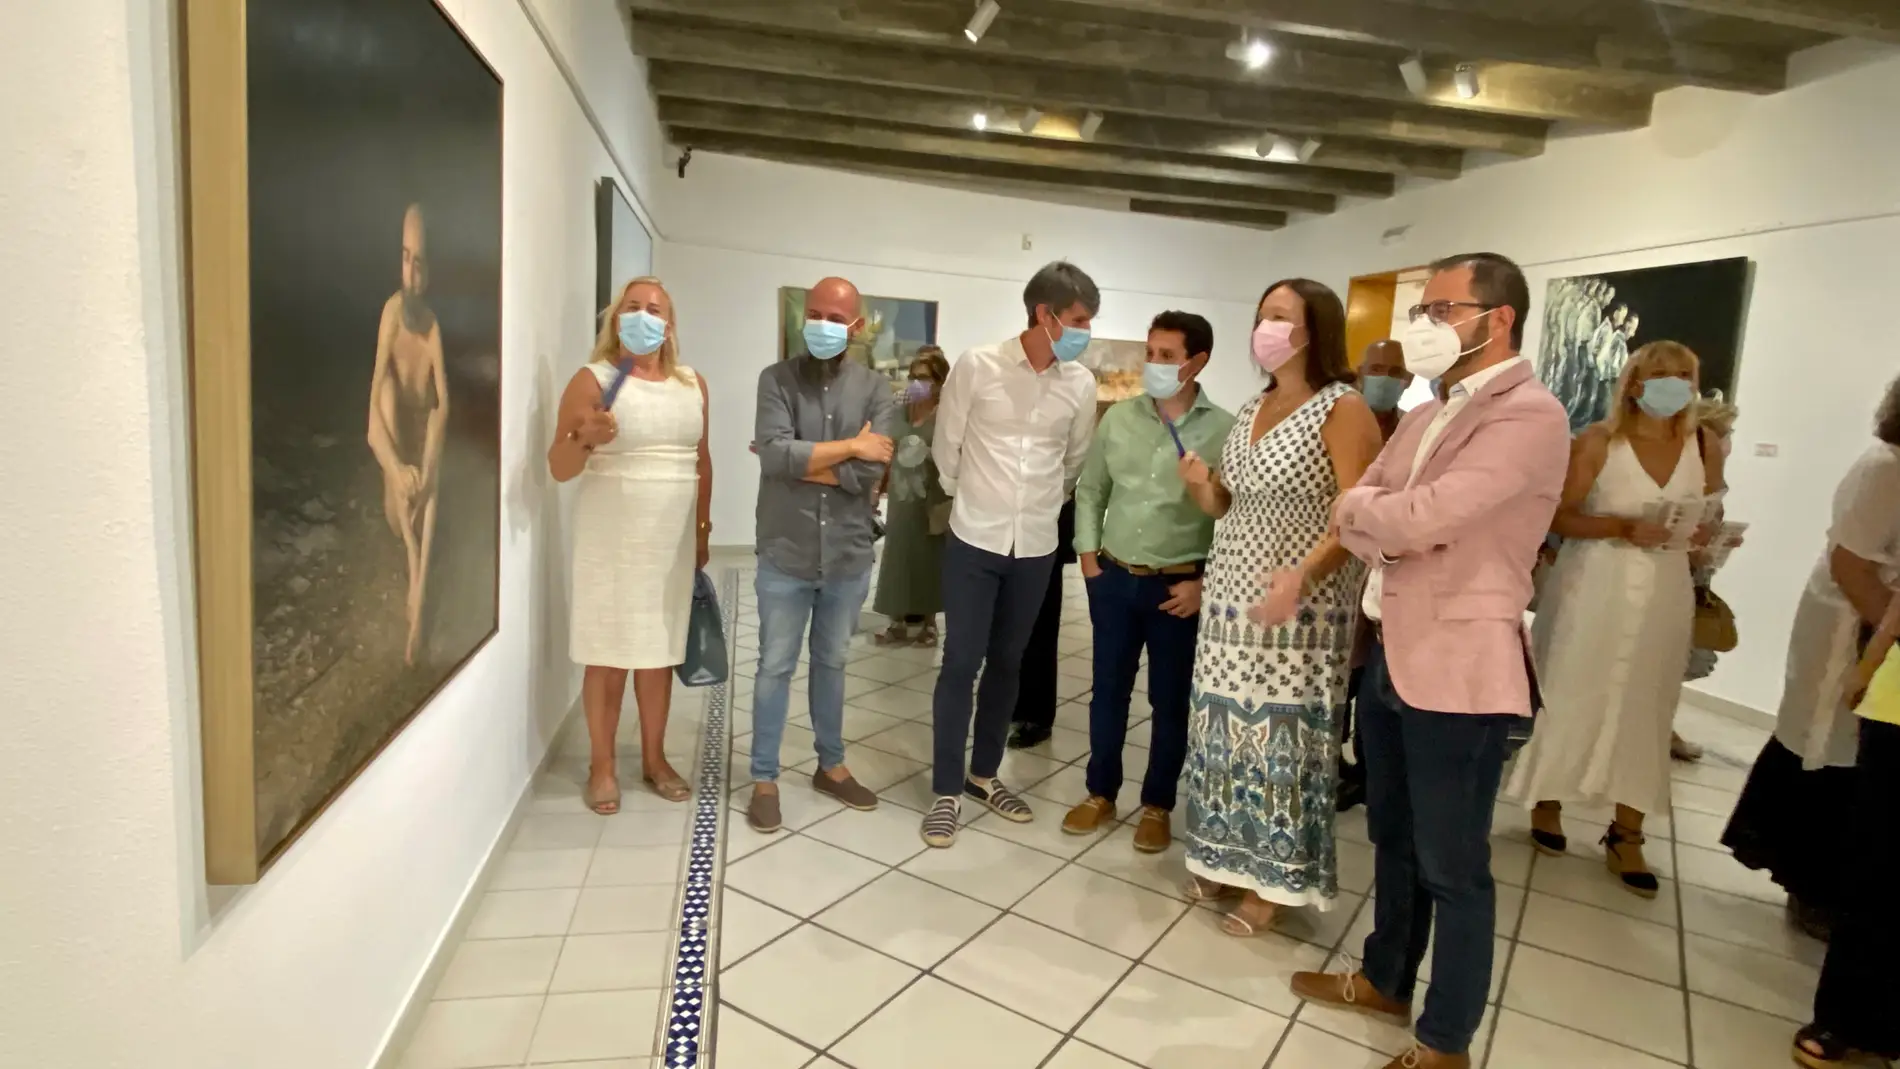 Jorge Gallego y Francisco Vera ganadores del XXV Certamen Internacional de Pintura “Ciudad de Alcázar”